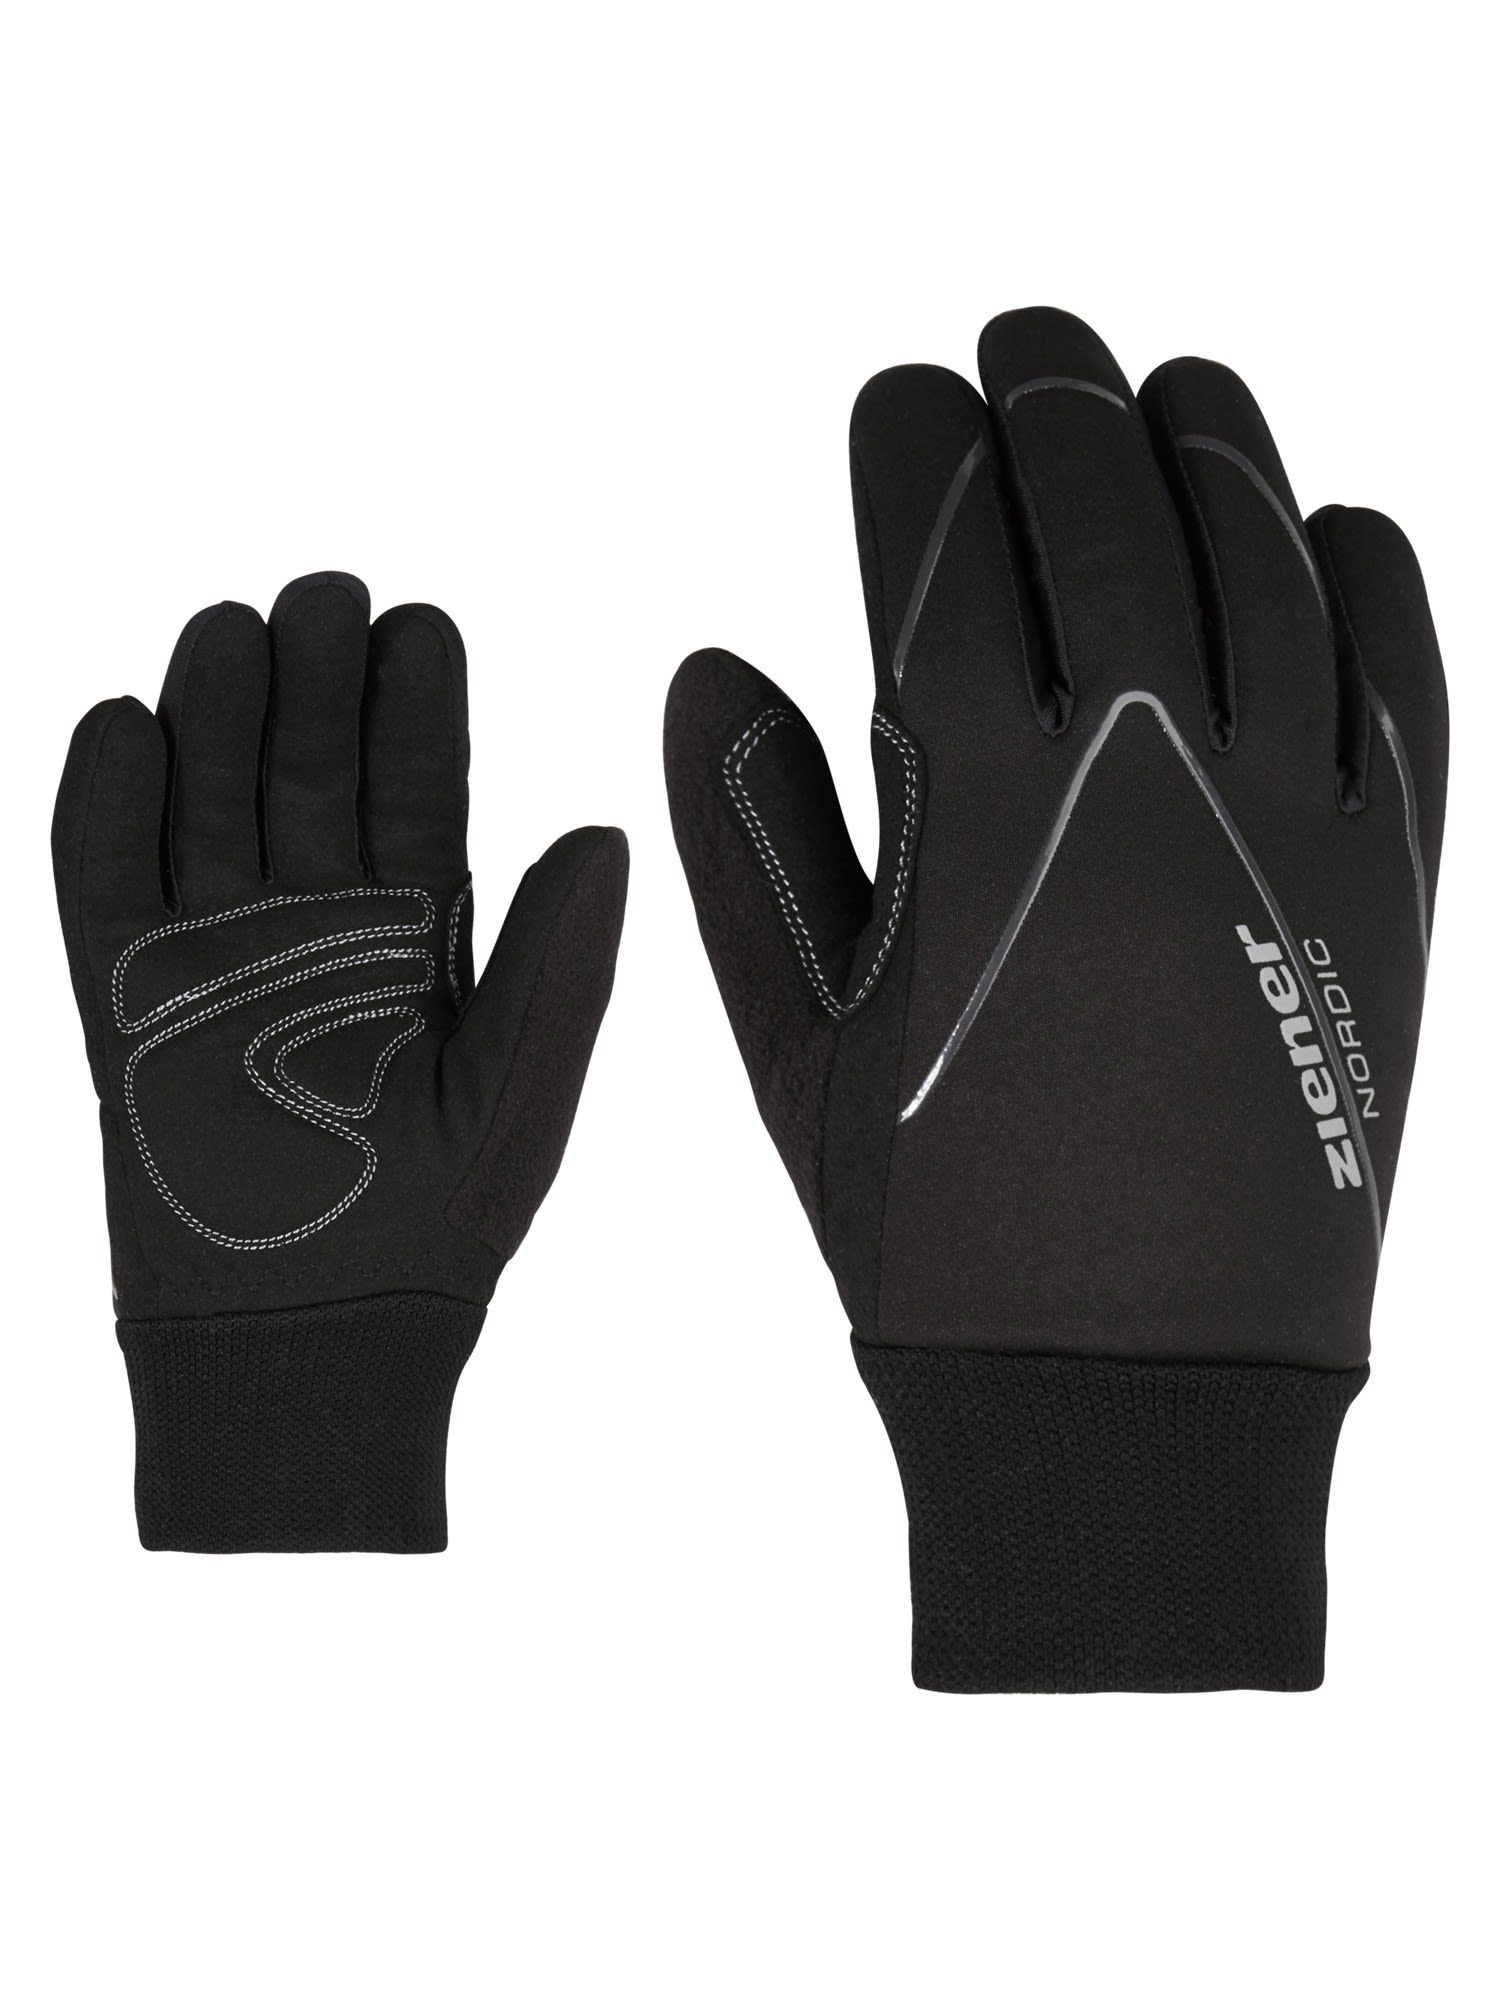 Kinder Junior Black Ziener Fleecehandschuhe Accessoires Glove Ziener Unico